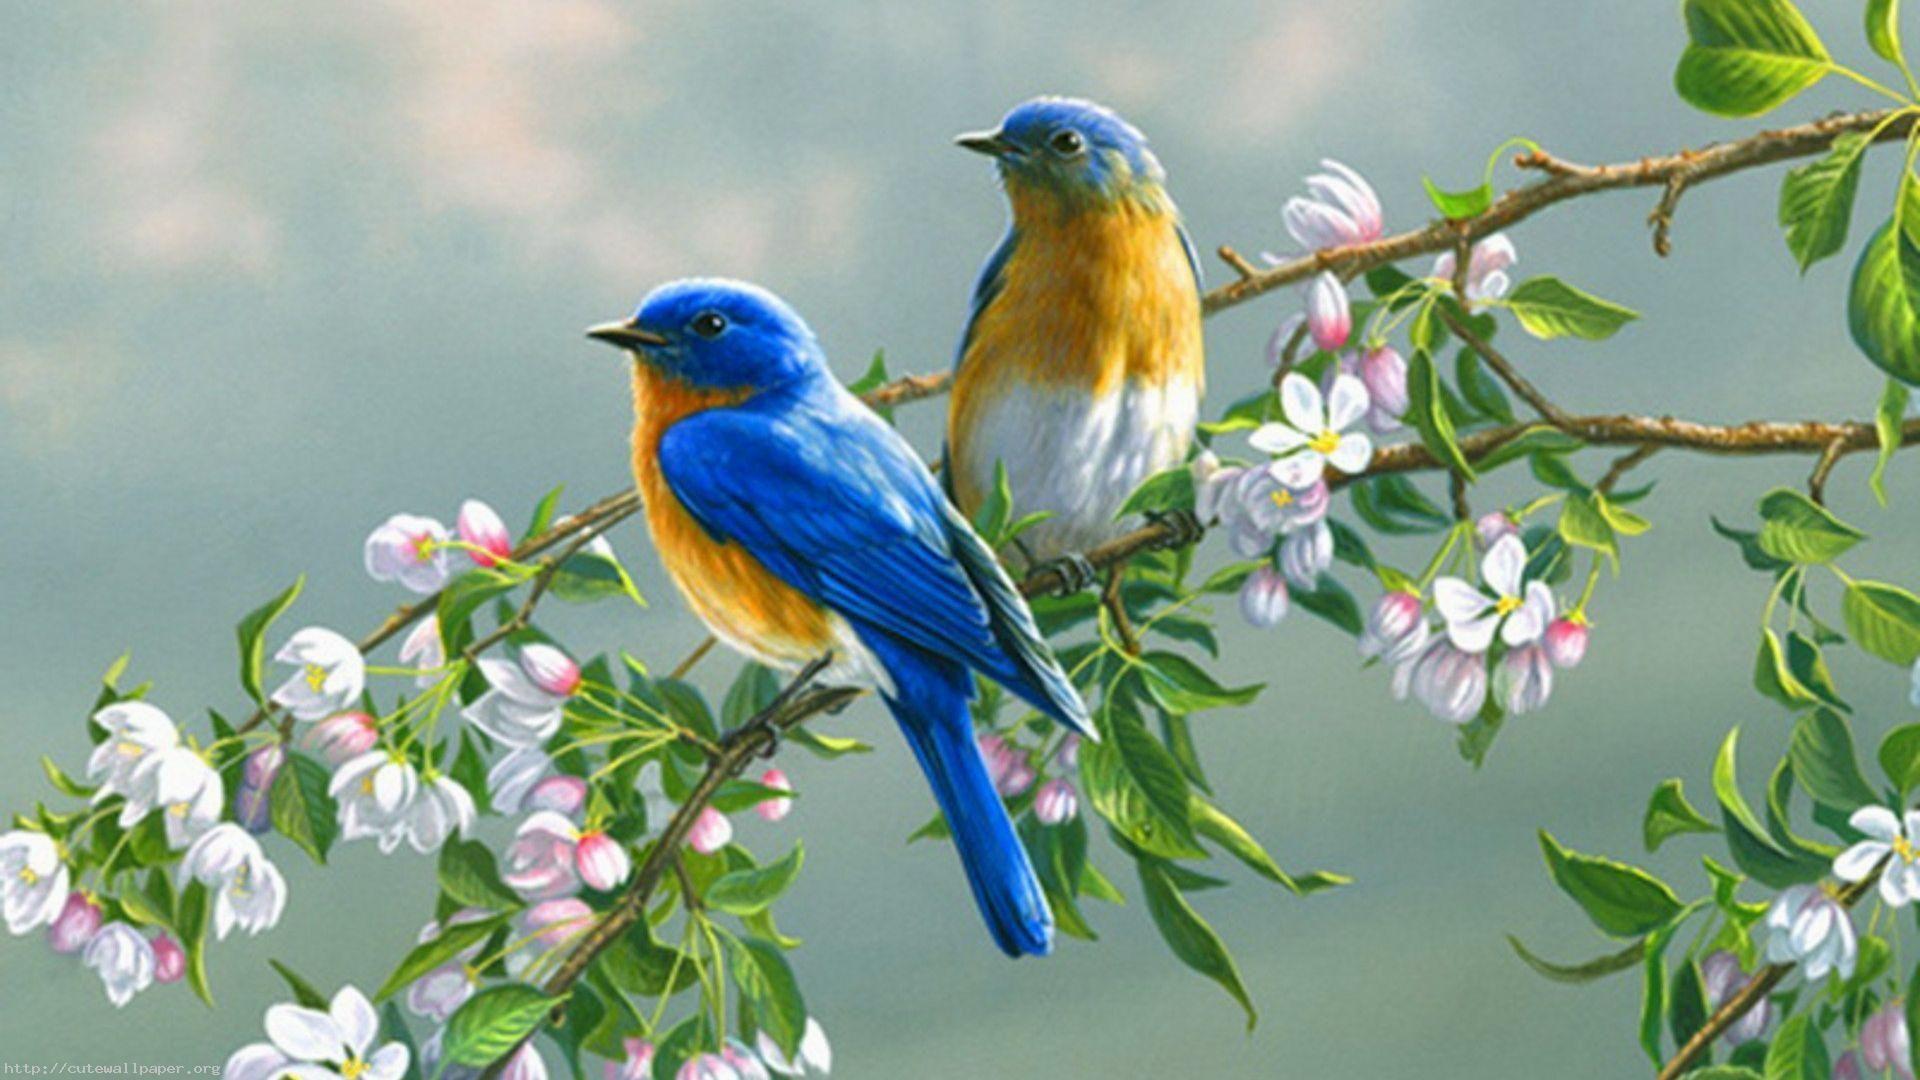 Bird and Tree Desktop Wallpapers - Top Free Bird and Tree Desktop